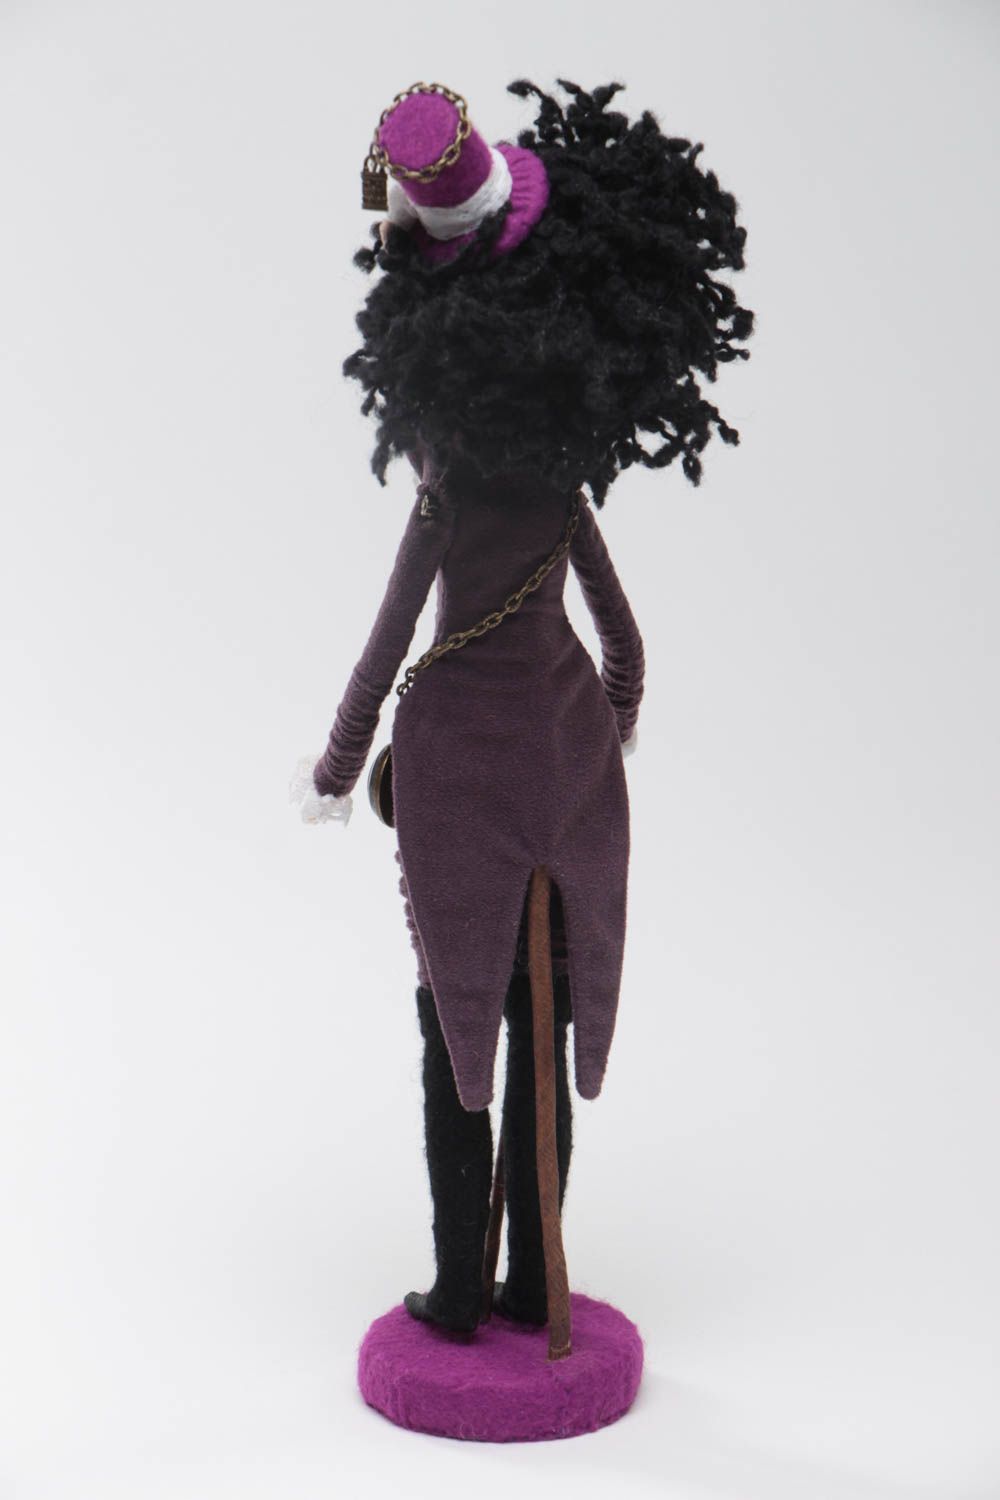 Textil Puppe für Interieur Elf auf Untersetzer aus Stoff handgemacht für Dekor foto 4